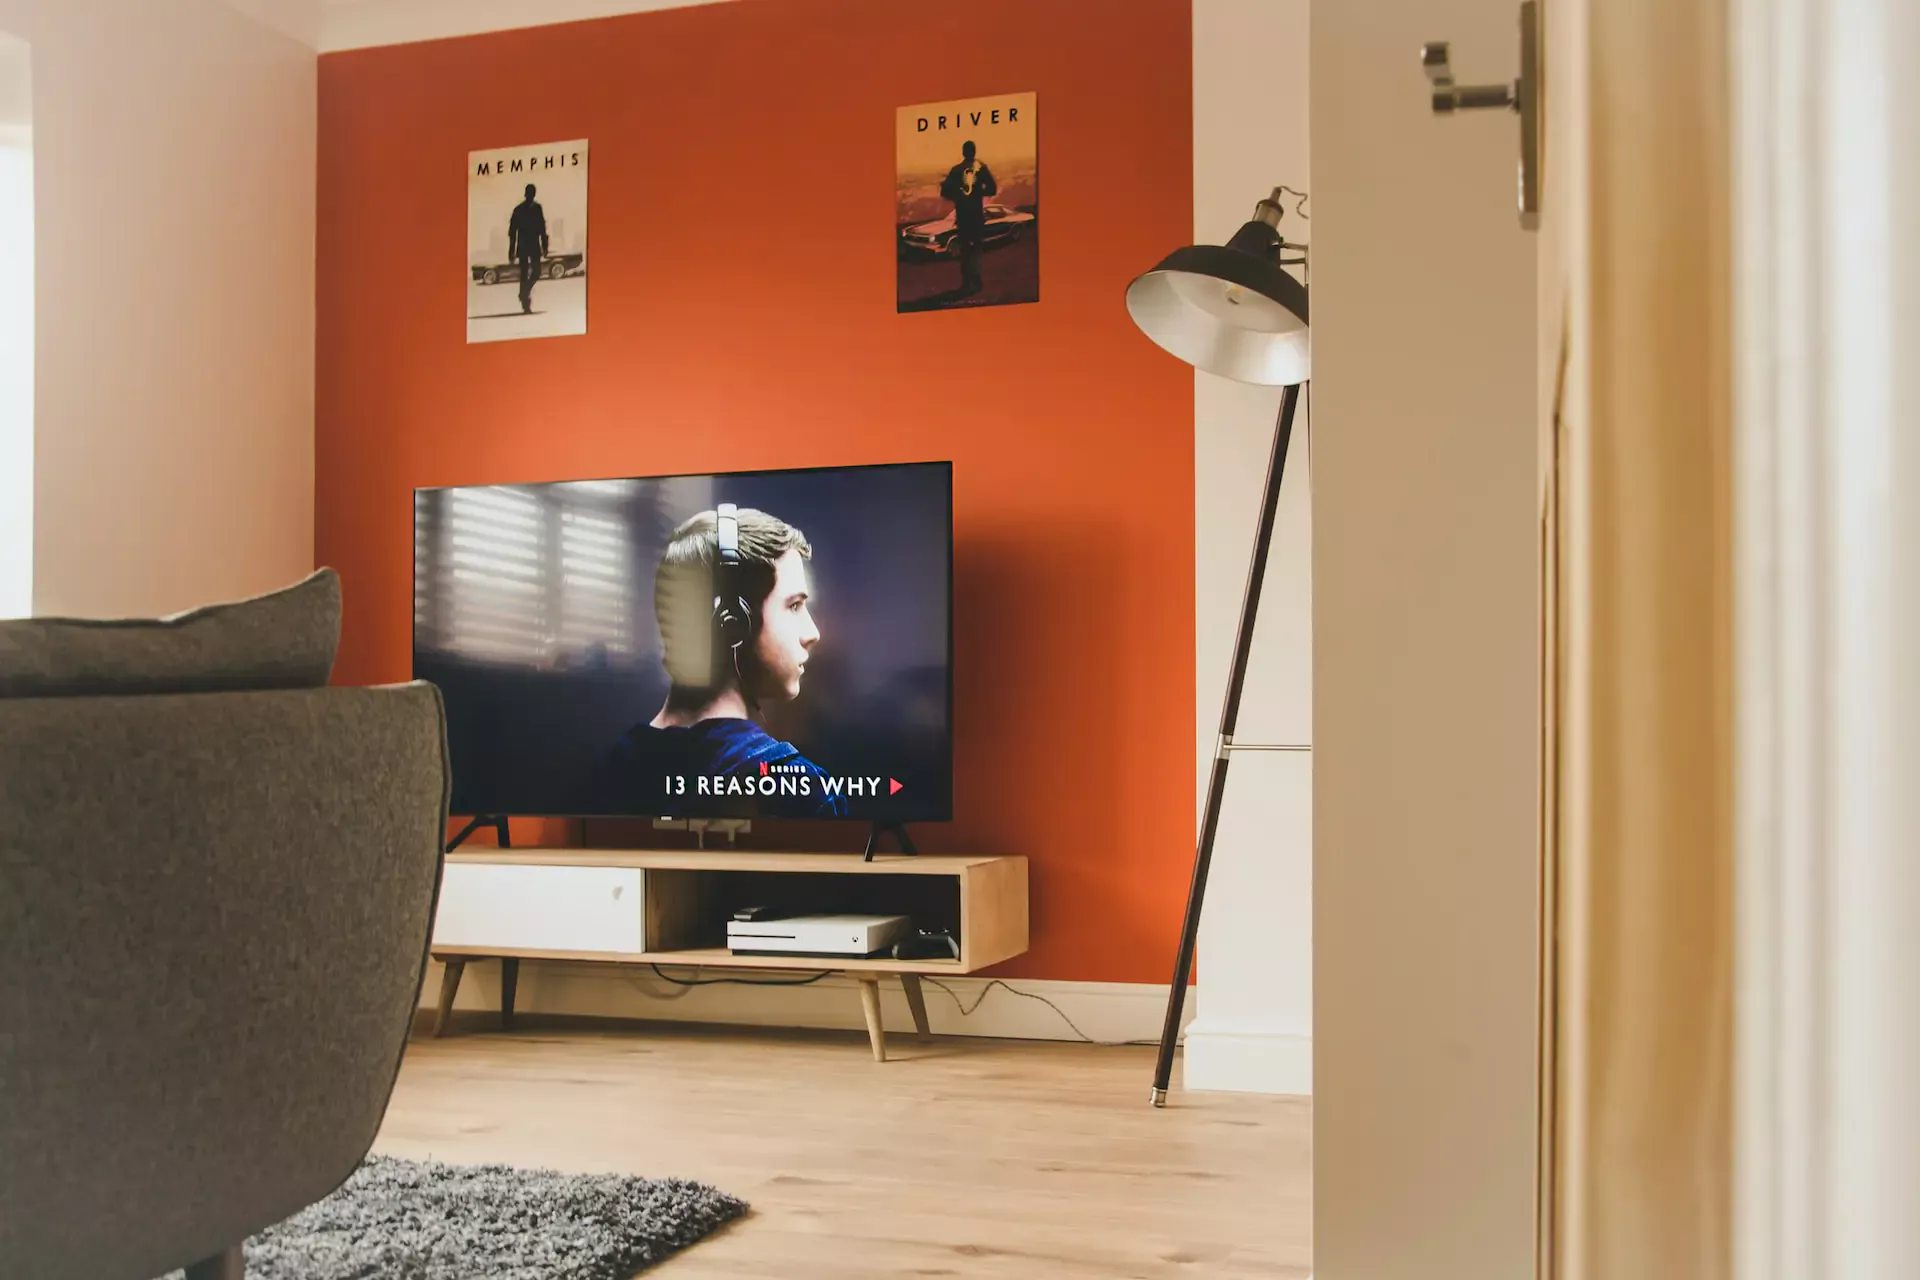 Comprar un televisor: OLED vs QLED vs LED